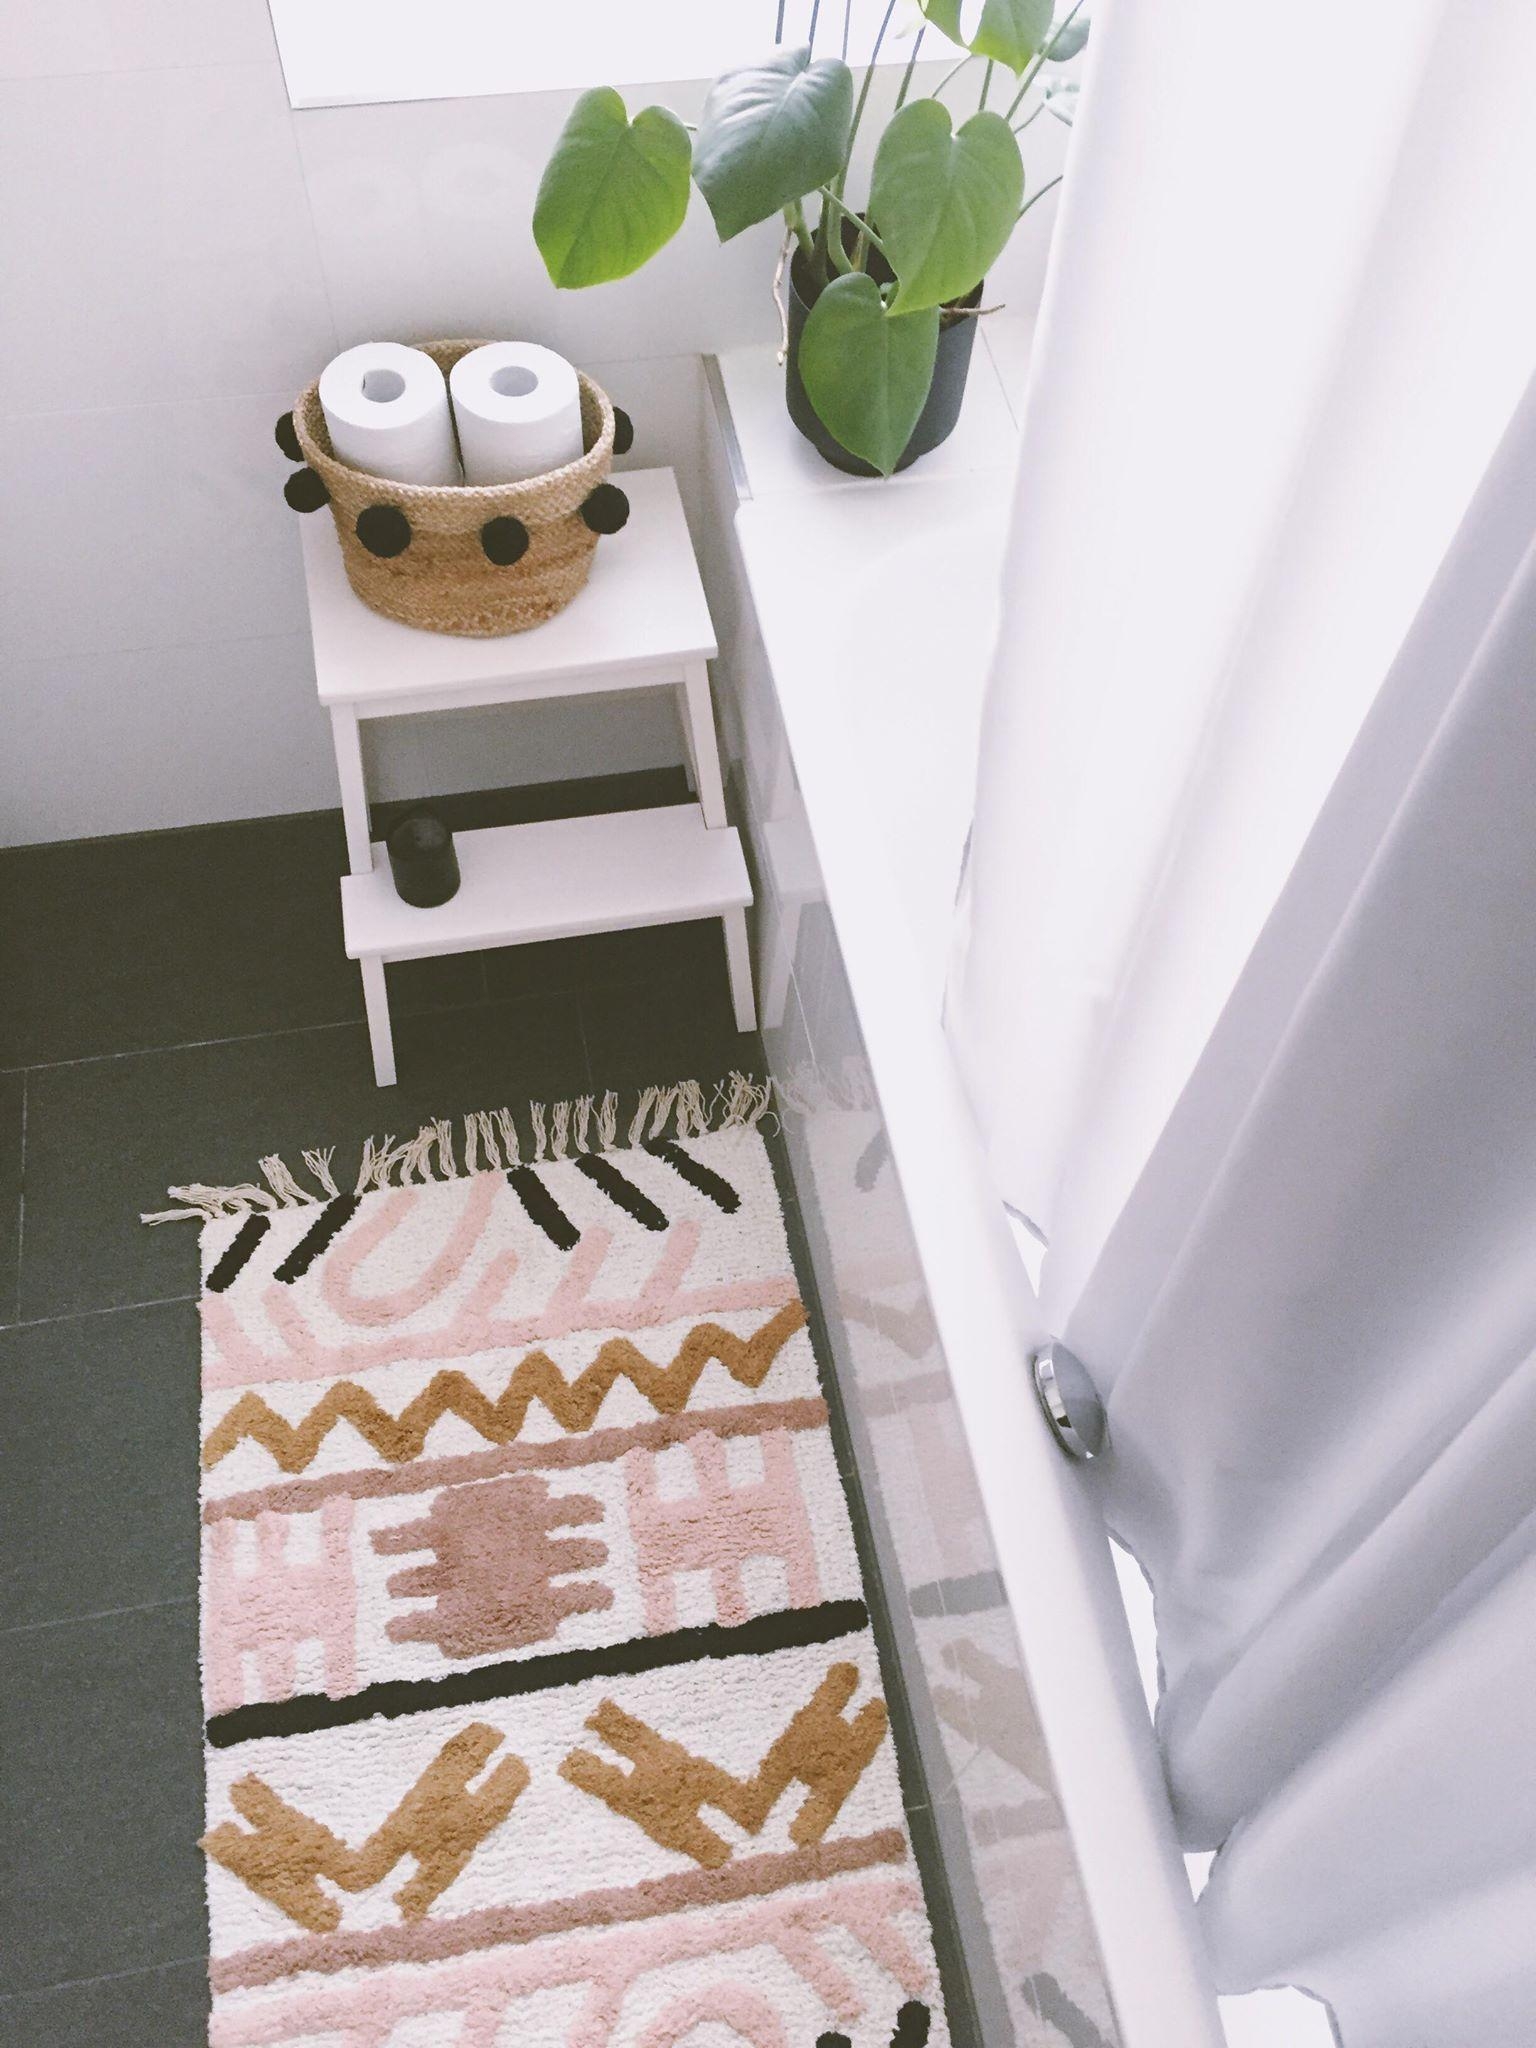 Mein neuer Teppich fürs Badezimmer. Liebe auf den ersten Blick! #depot #badezimmer #holly #teppich #handgemacht #ethno 